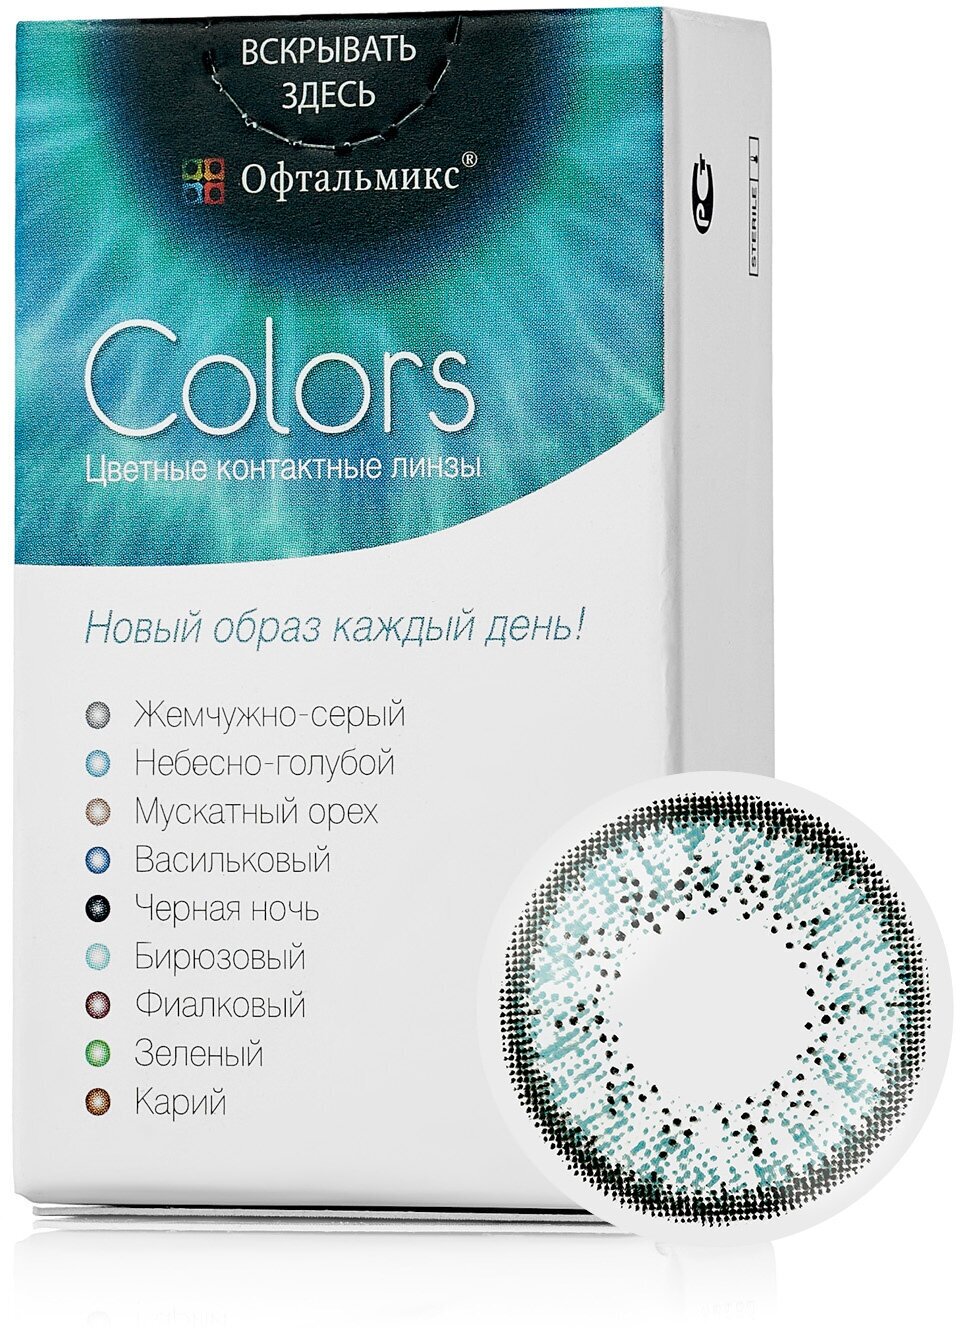 Цветные контактные линзы Офтальмикс Color Sky blue (небесно-голубой) R8.6 -6.5D (2шт.)